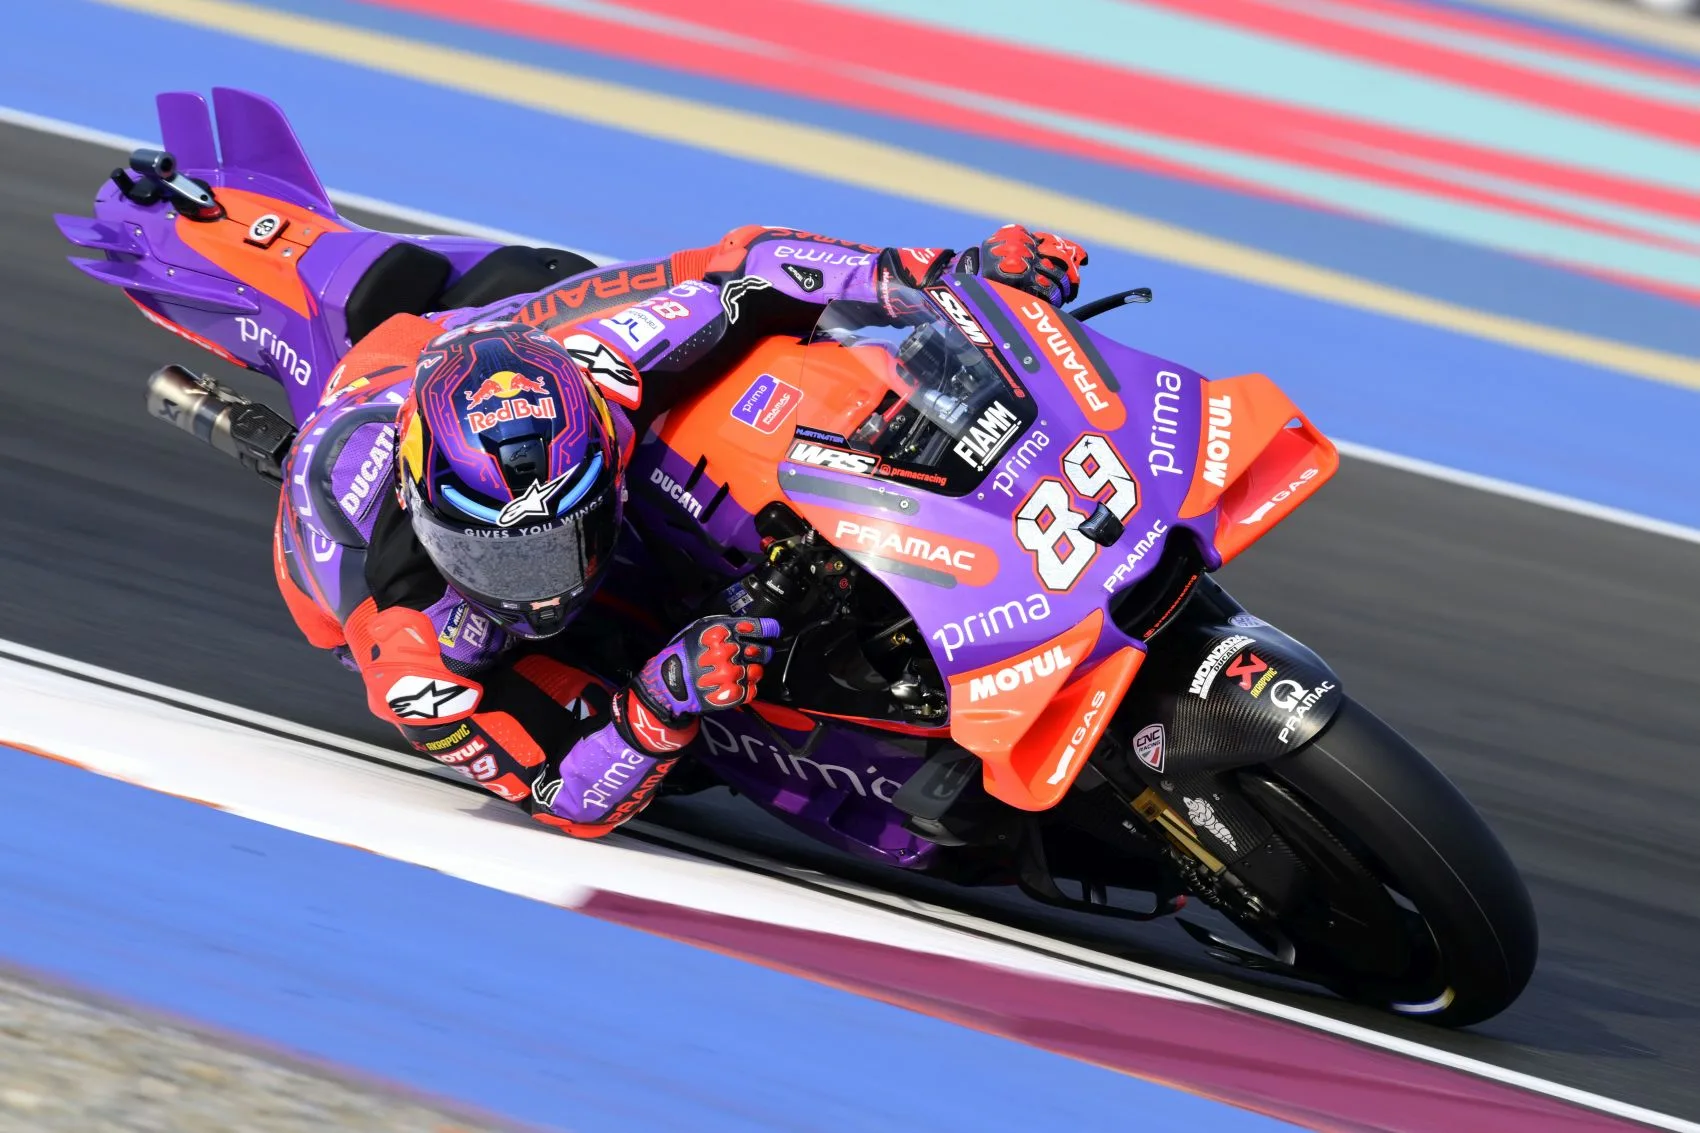 Az aerodinamika esszenciális a MotoGP-ben: A sebesség titka a levegő uralása